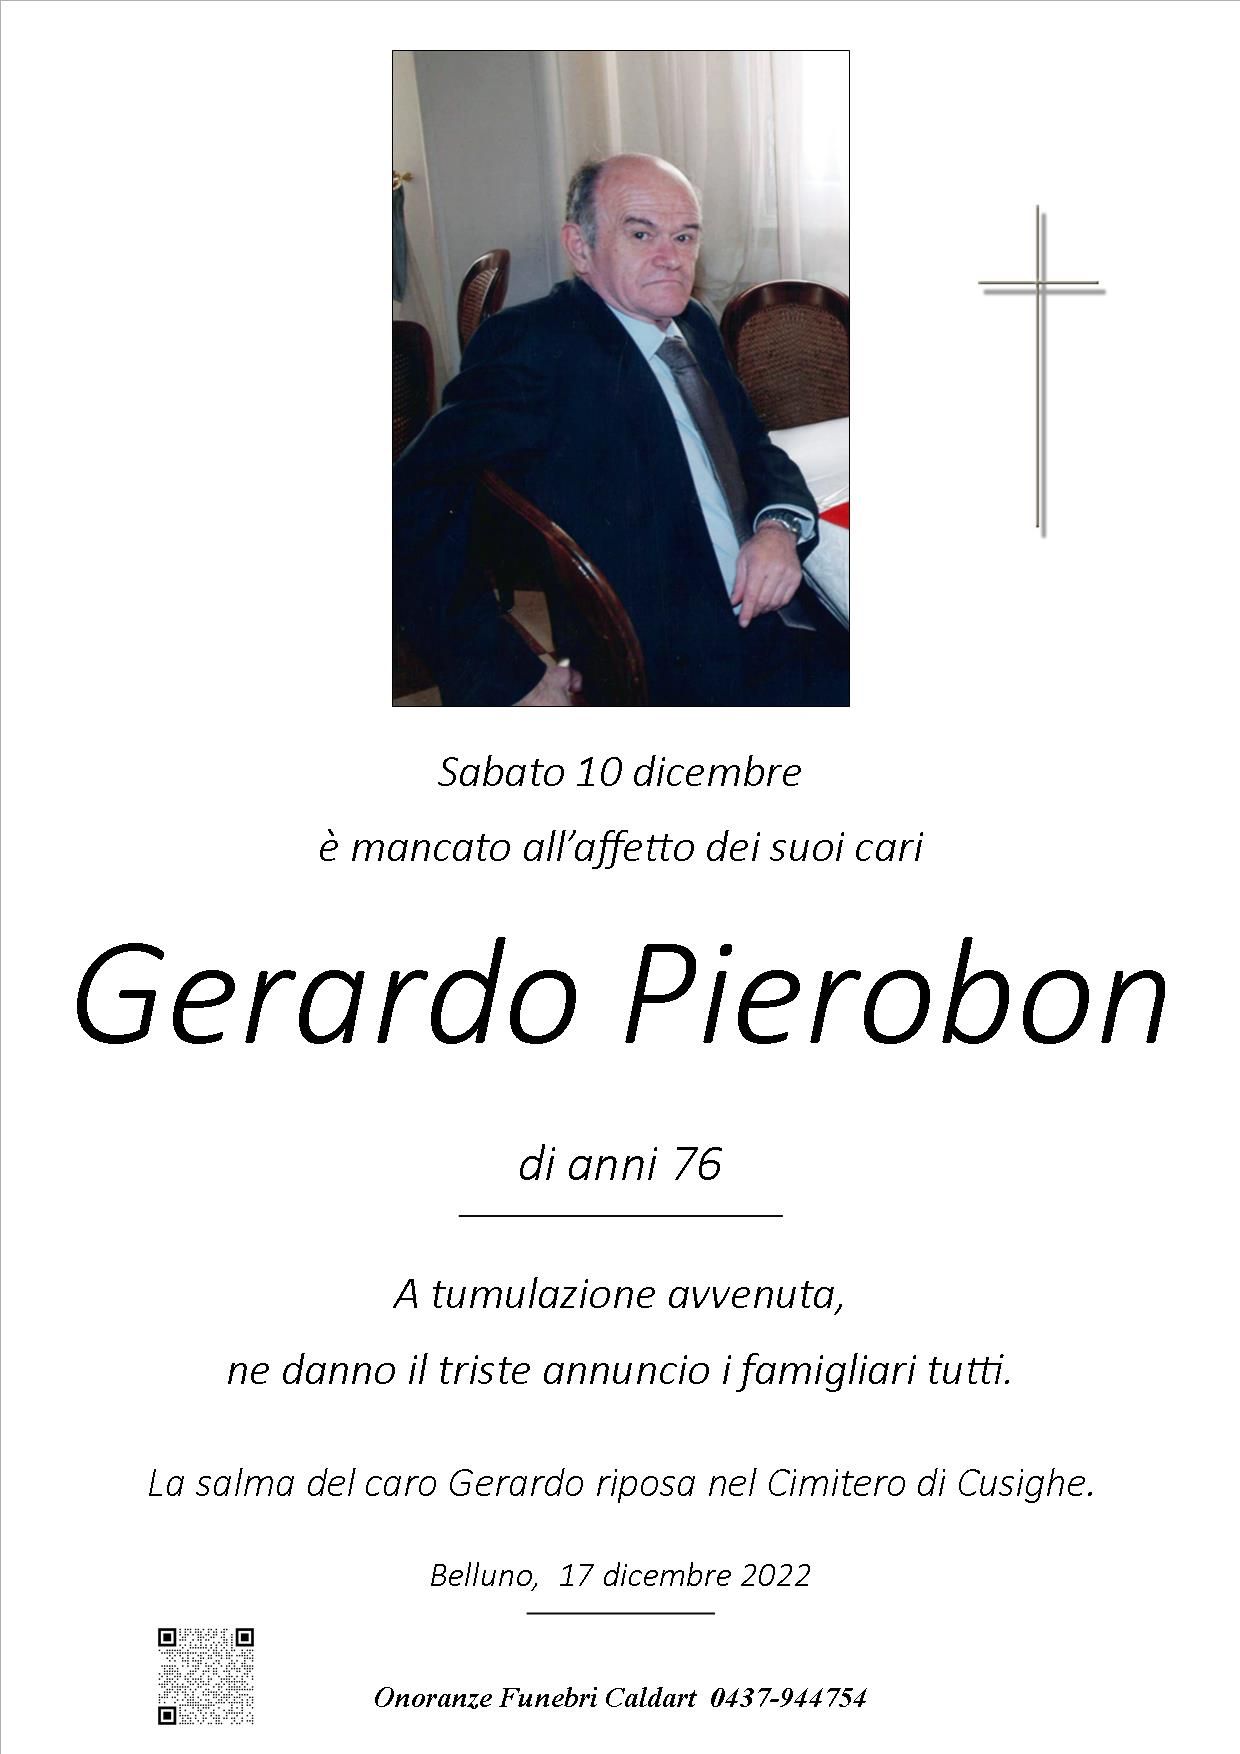 Pierobon Gerardo